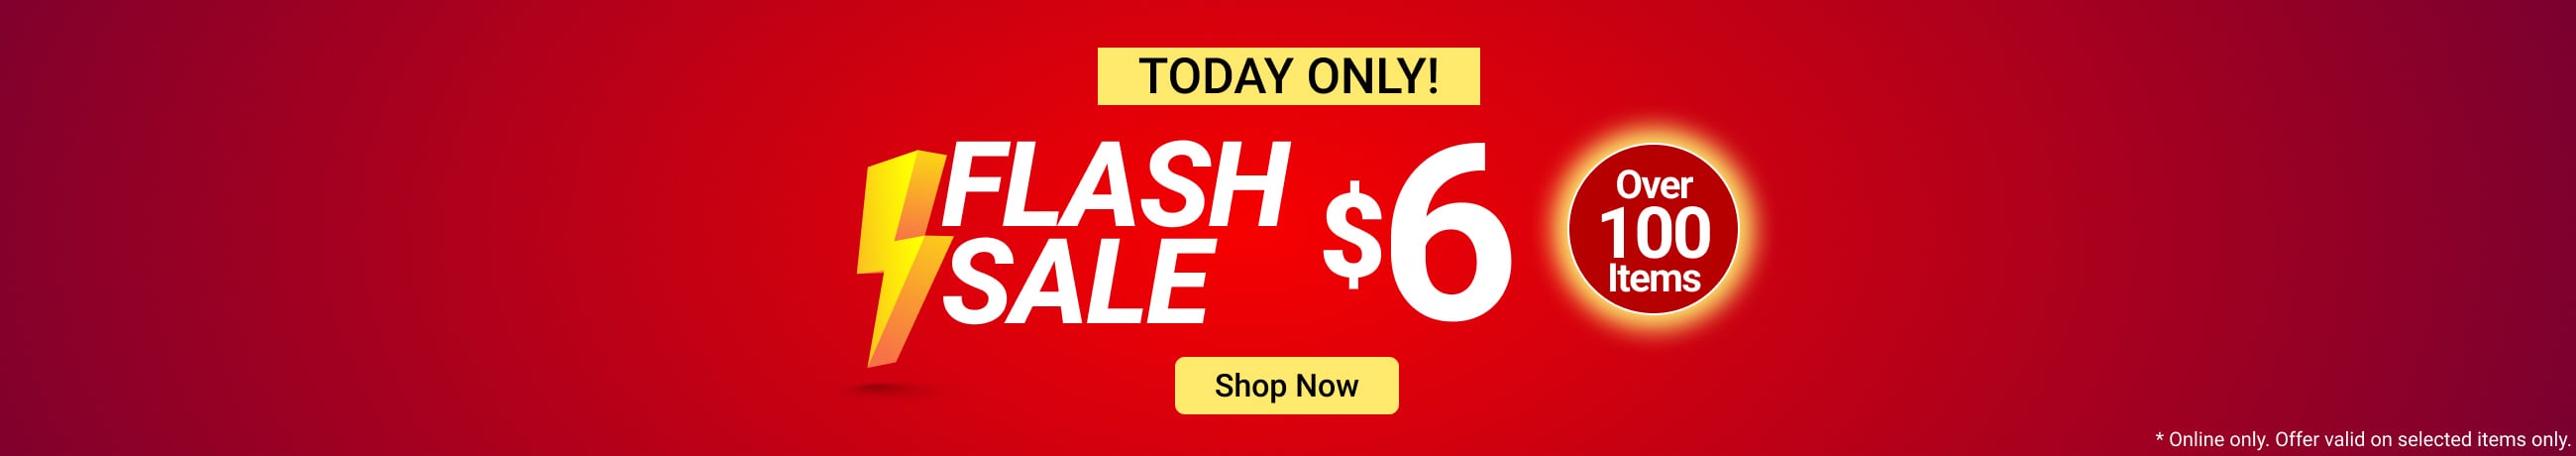 $6 Flash Sale - shop now